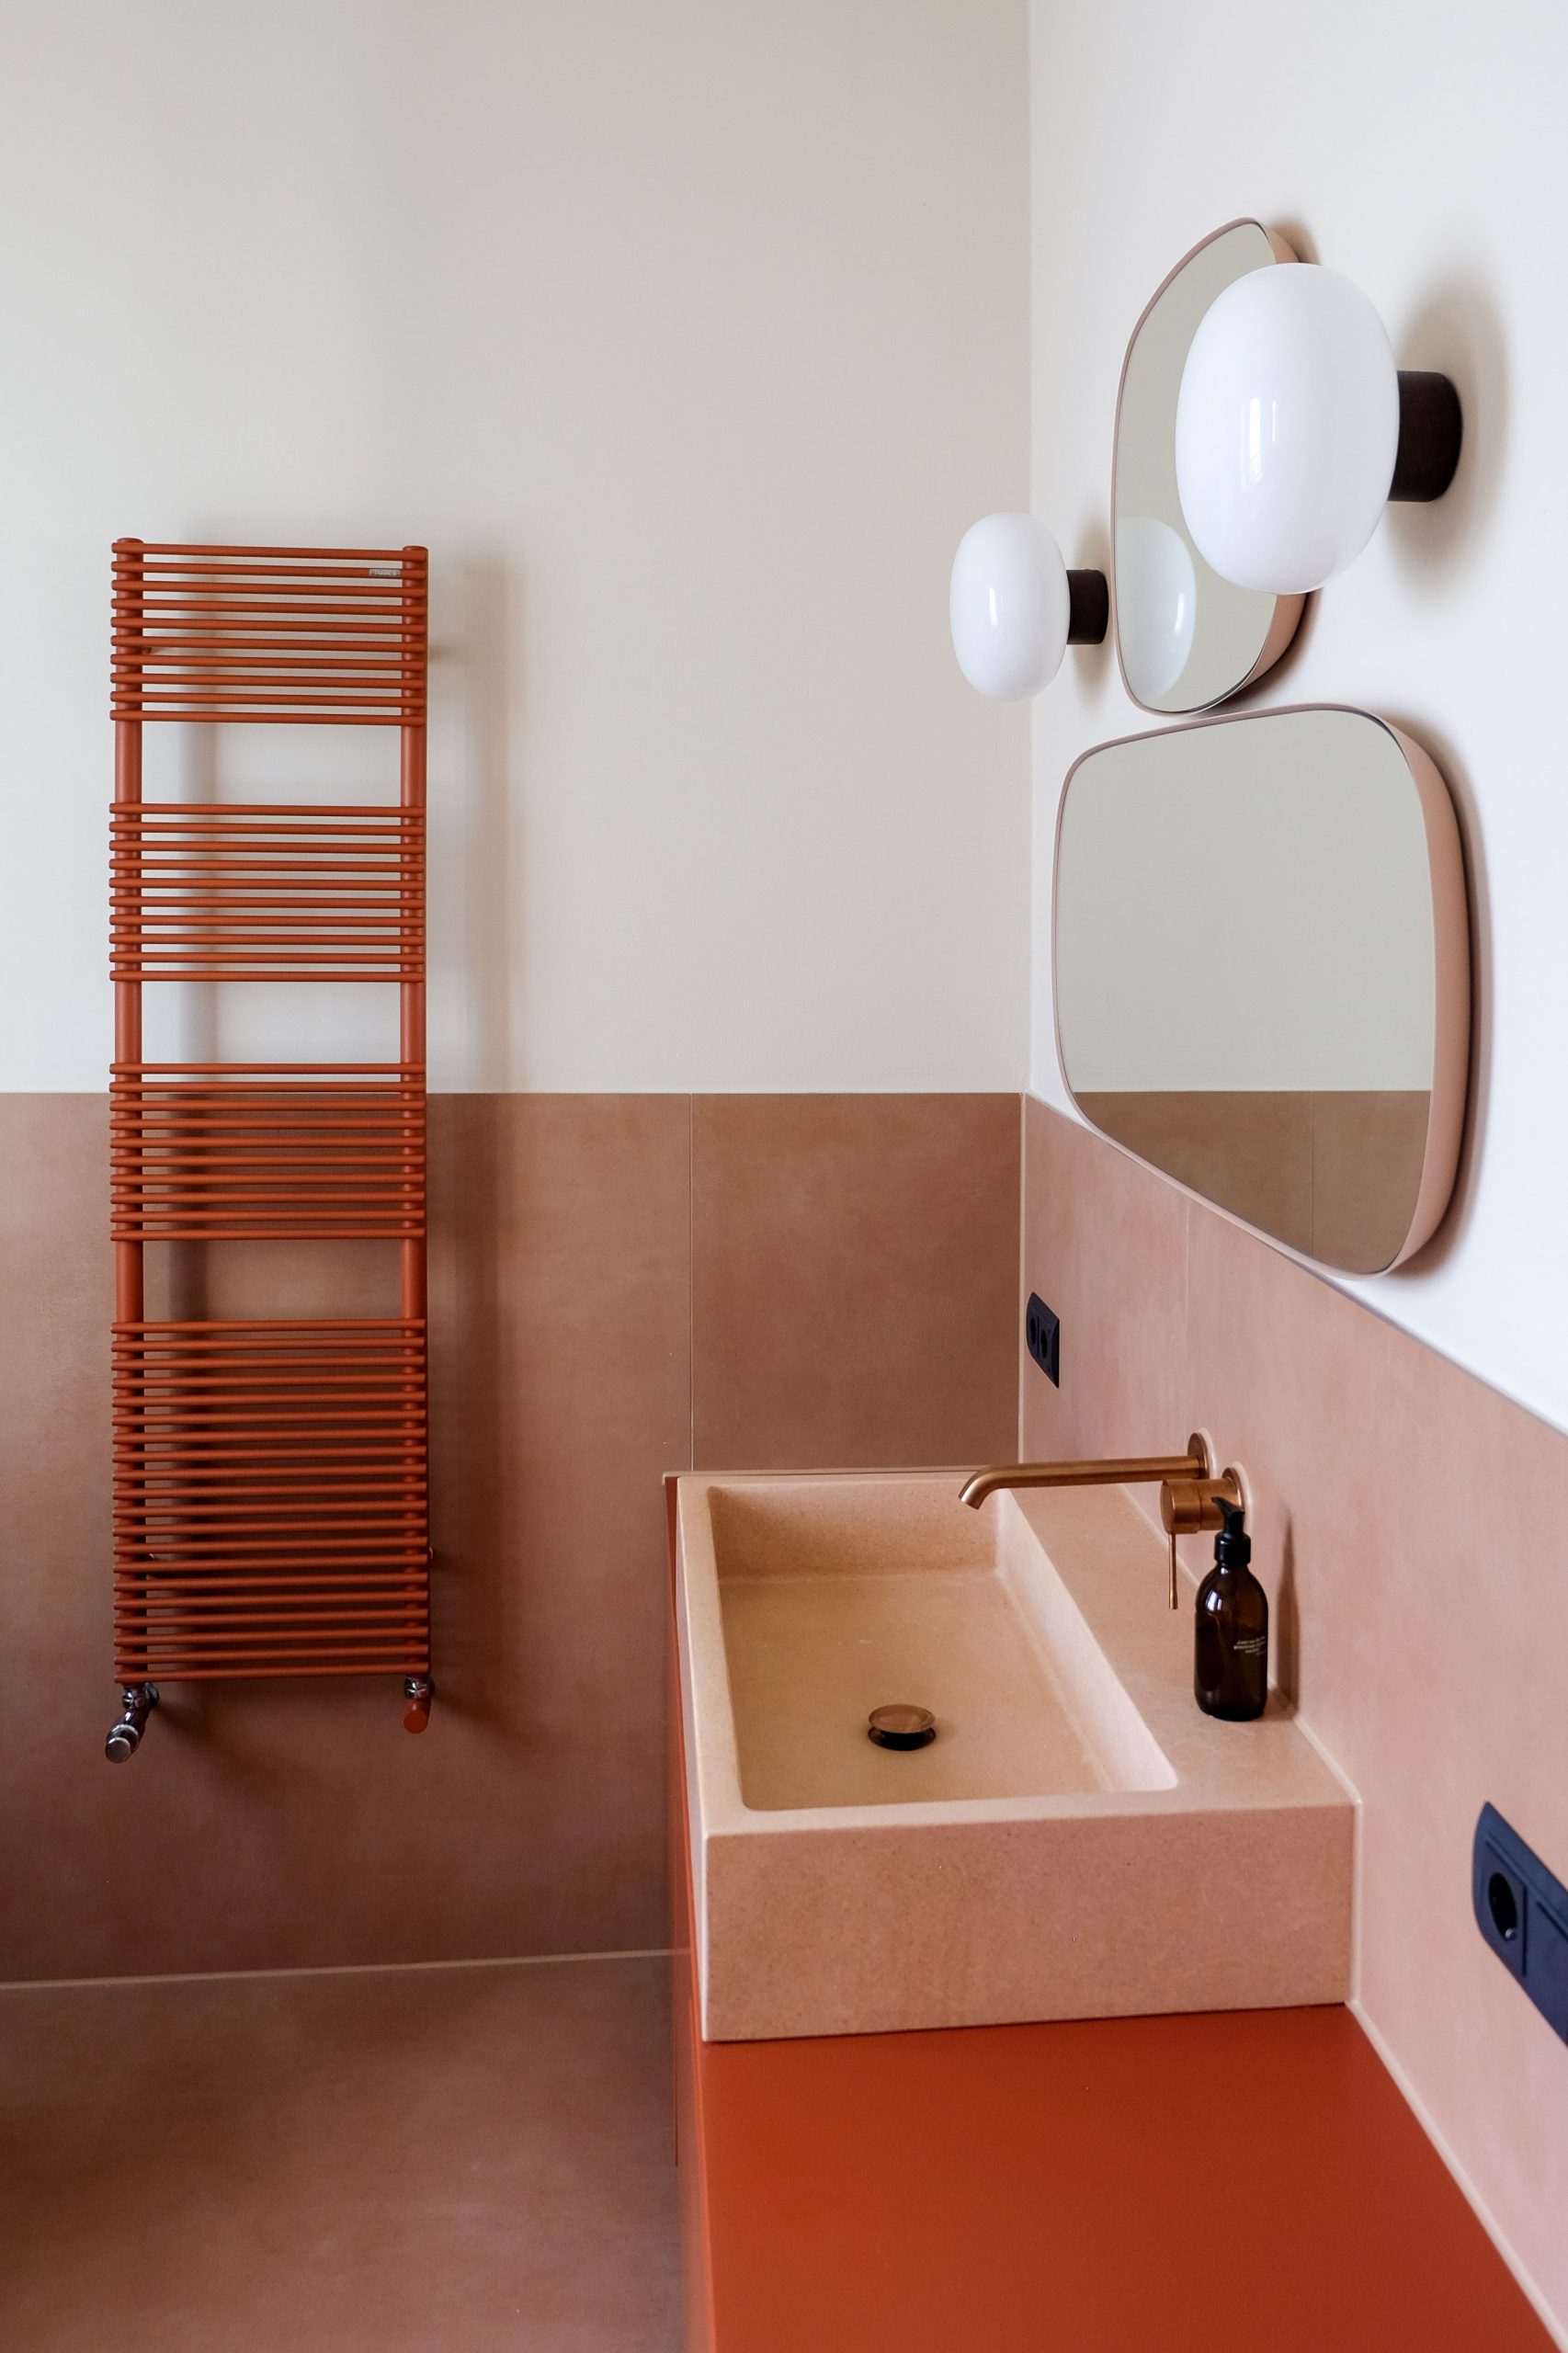 Badezimmer mit Waschbecken, Heizkörper und Armaturen in warmen Tönen auf maßgefertigten Möbeln in Rottönen. 